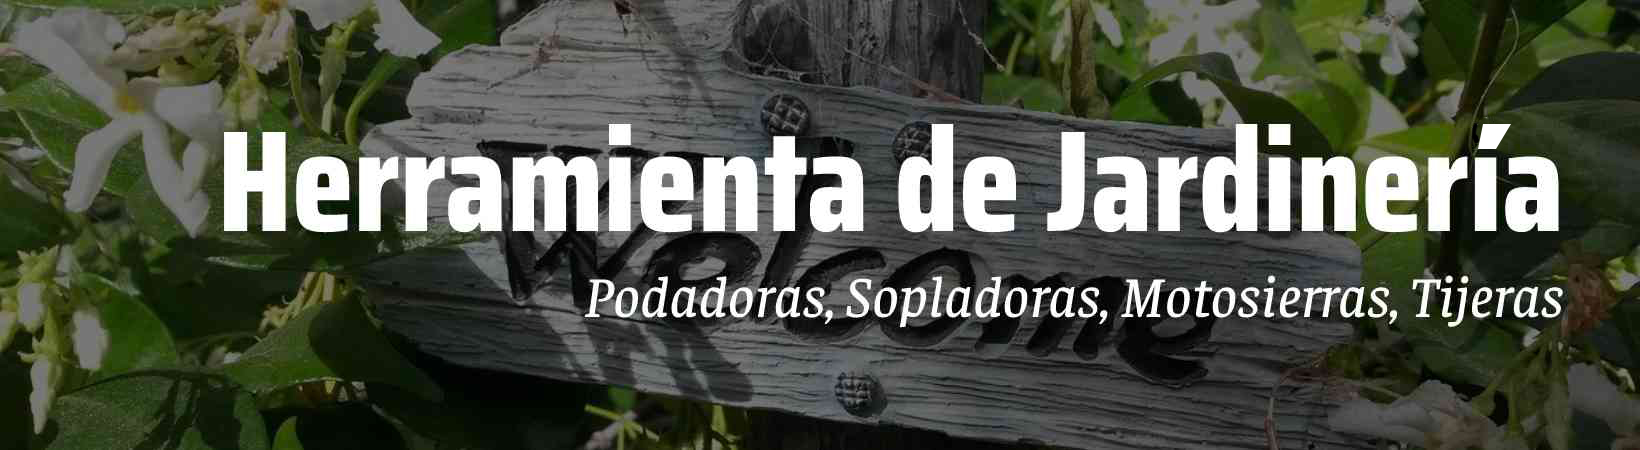 Herramienta para Jardineria en Guadalajara